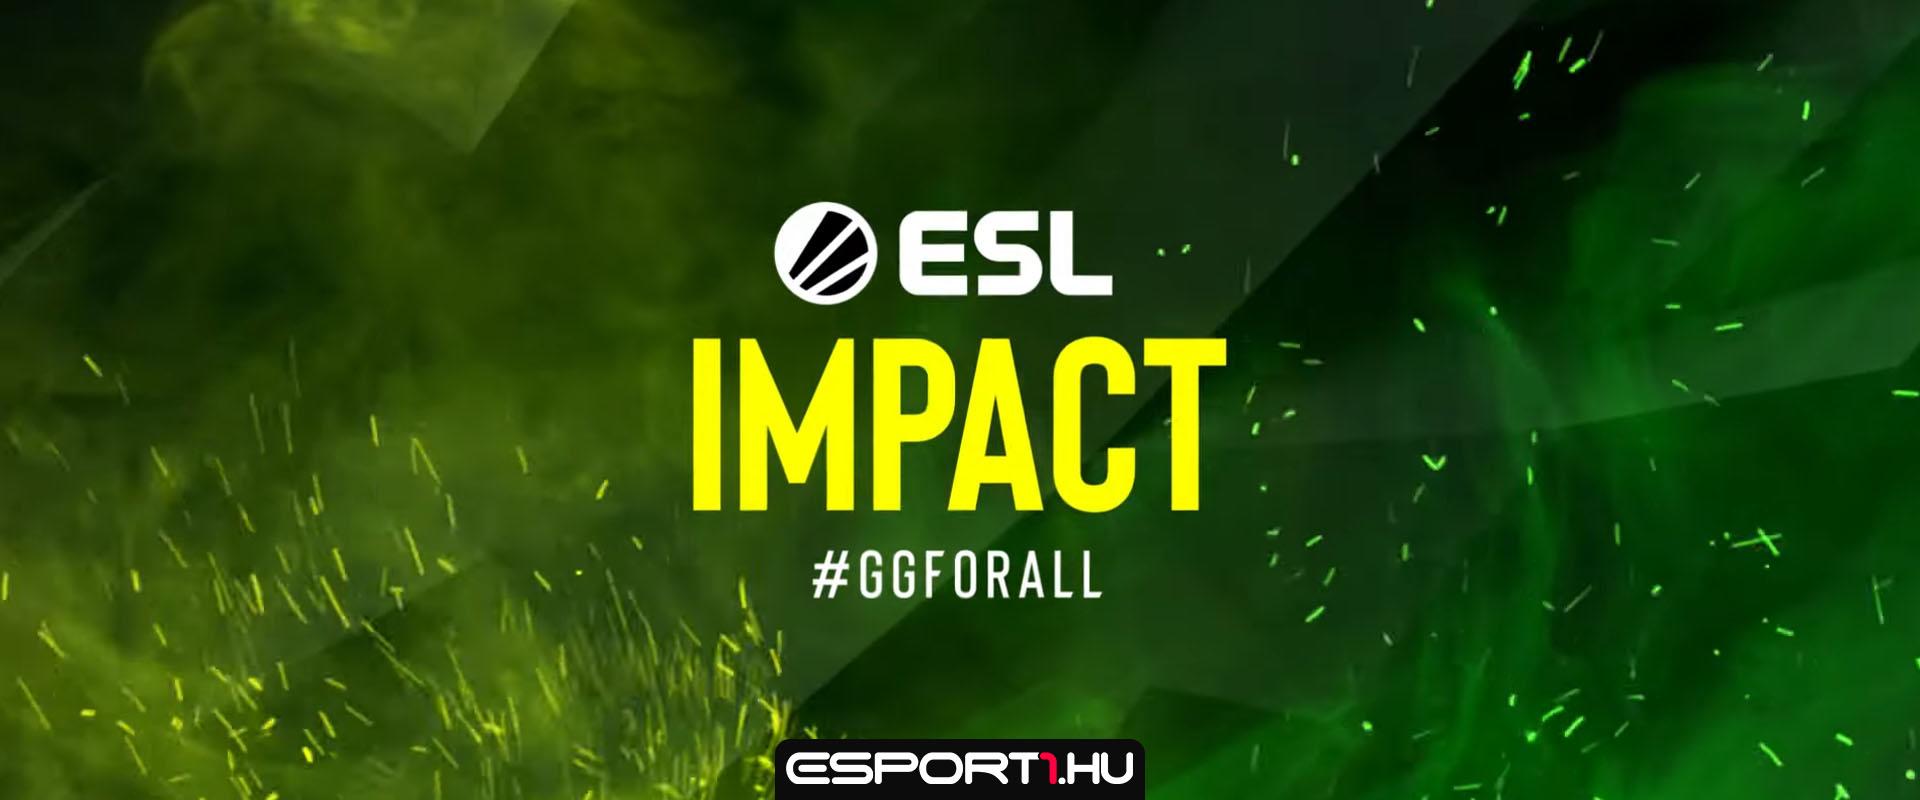 CS:GO: Márciusban indul a 150 000 dolláros női liga, az ESL Impact